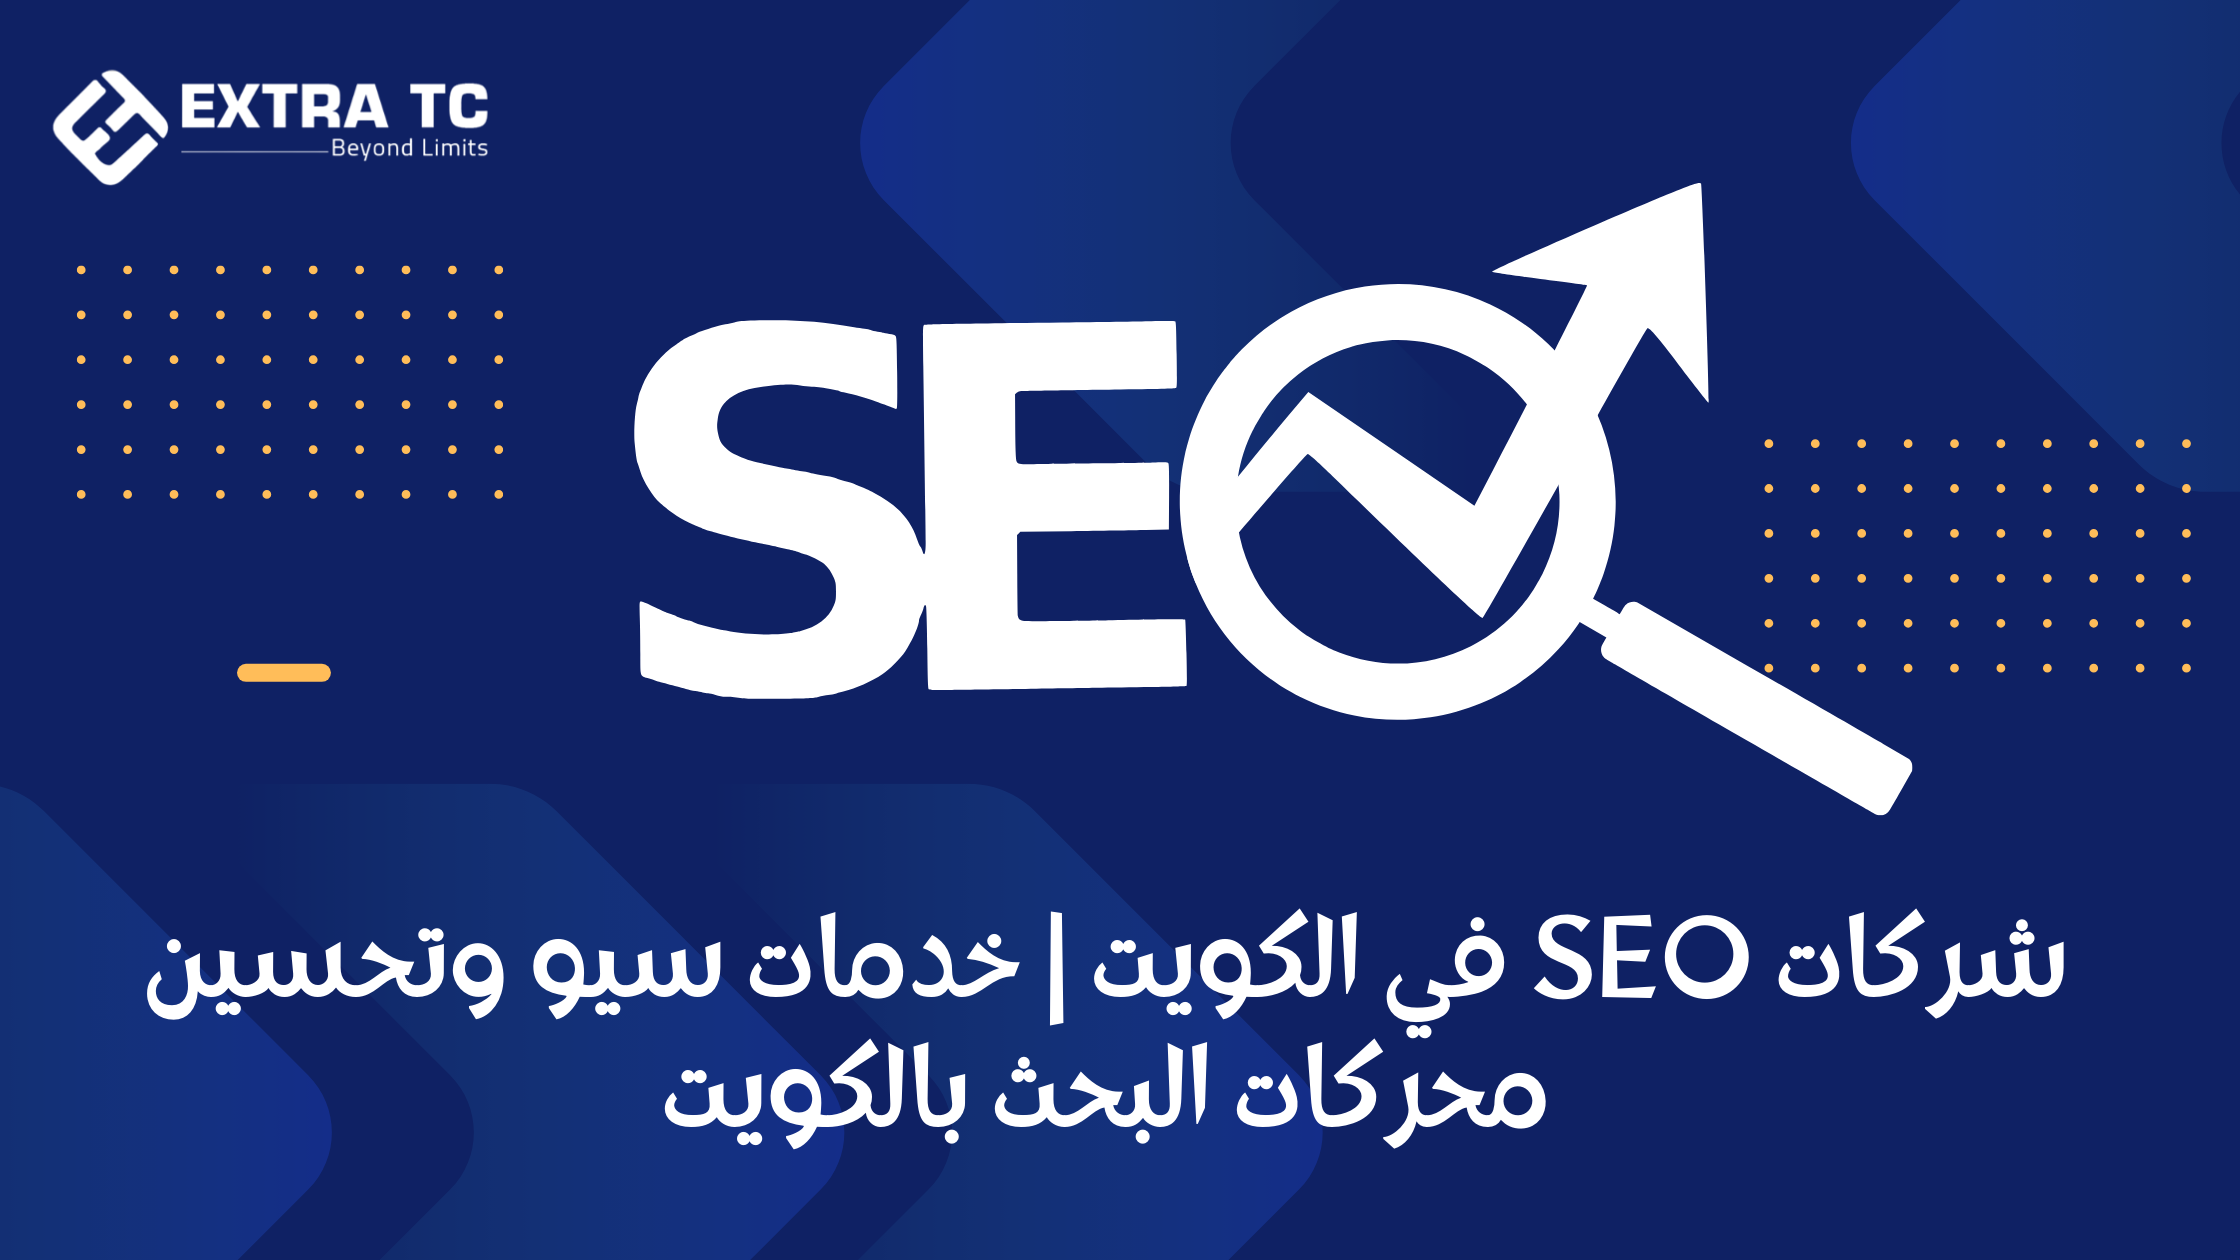 شركات SEO في الكويت | خدمات سيو وتحسين محركات البحث بالكويت